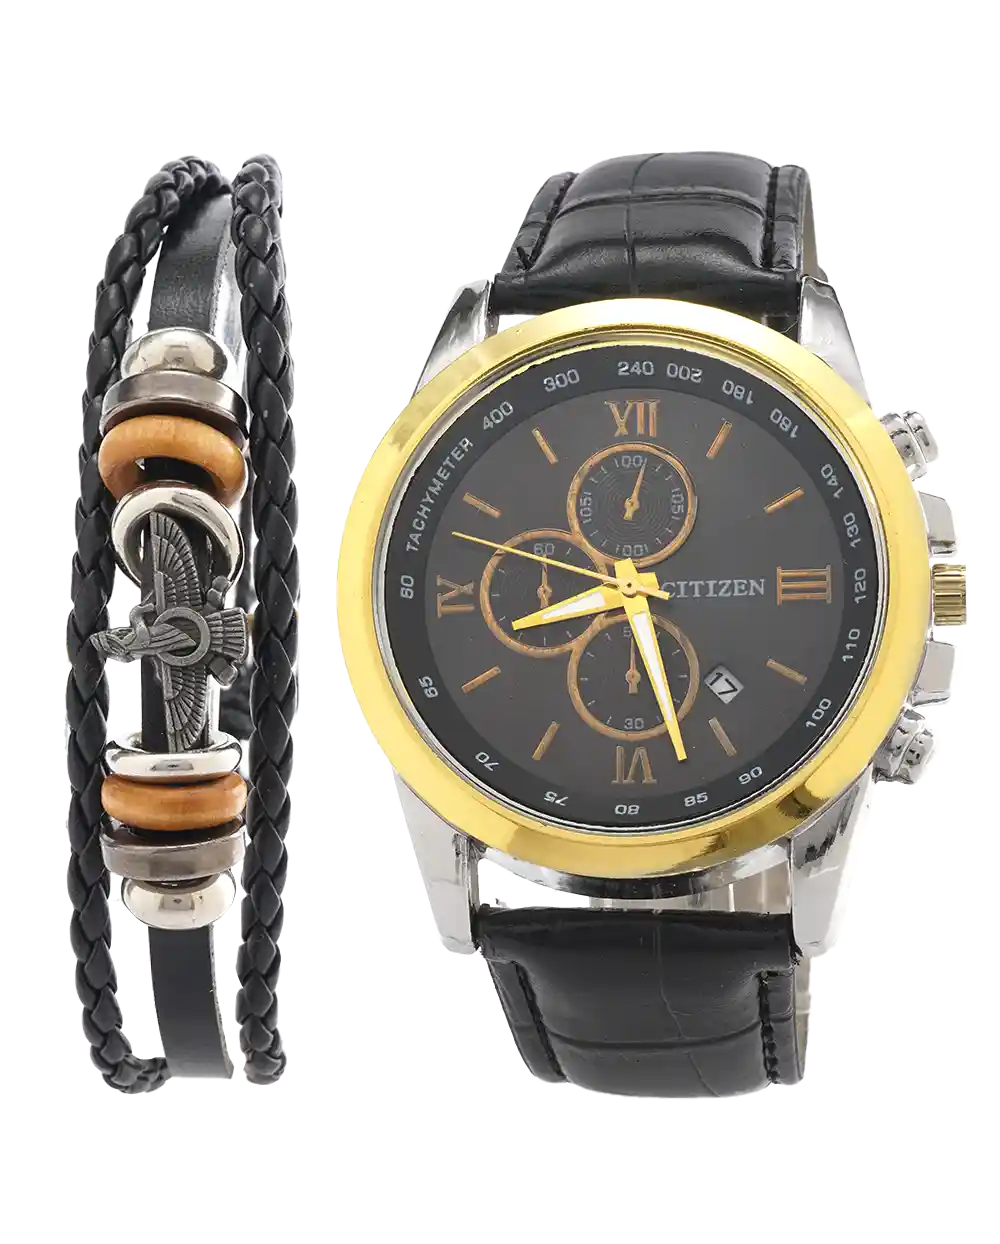 خرید ست ساعت مچی و دستبند سیتیزن CITIZEN مدل 1927 با دستبند چرم طرح فروهر قیمت 270 هزارتومان به همراه ارسال رایگان به سراسر ایران